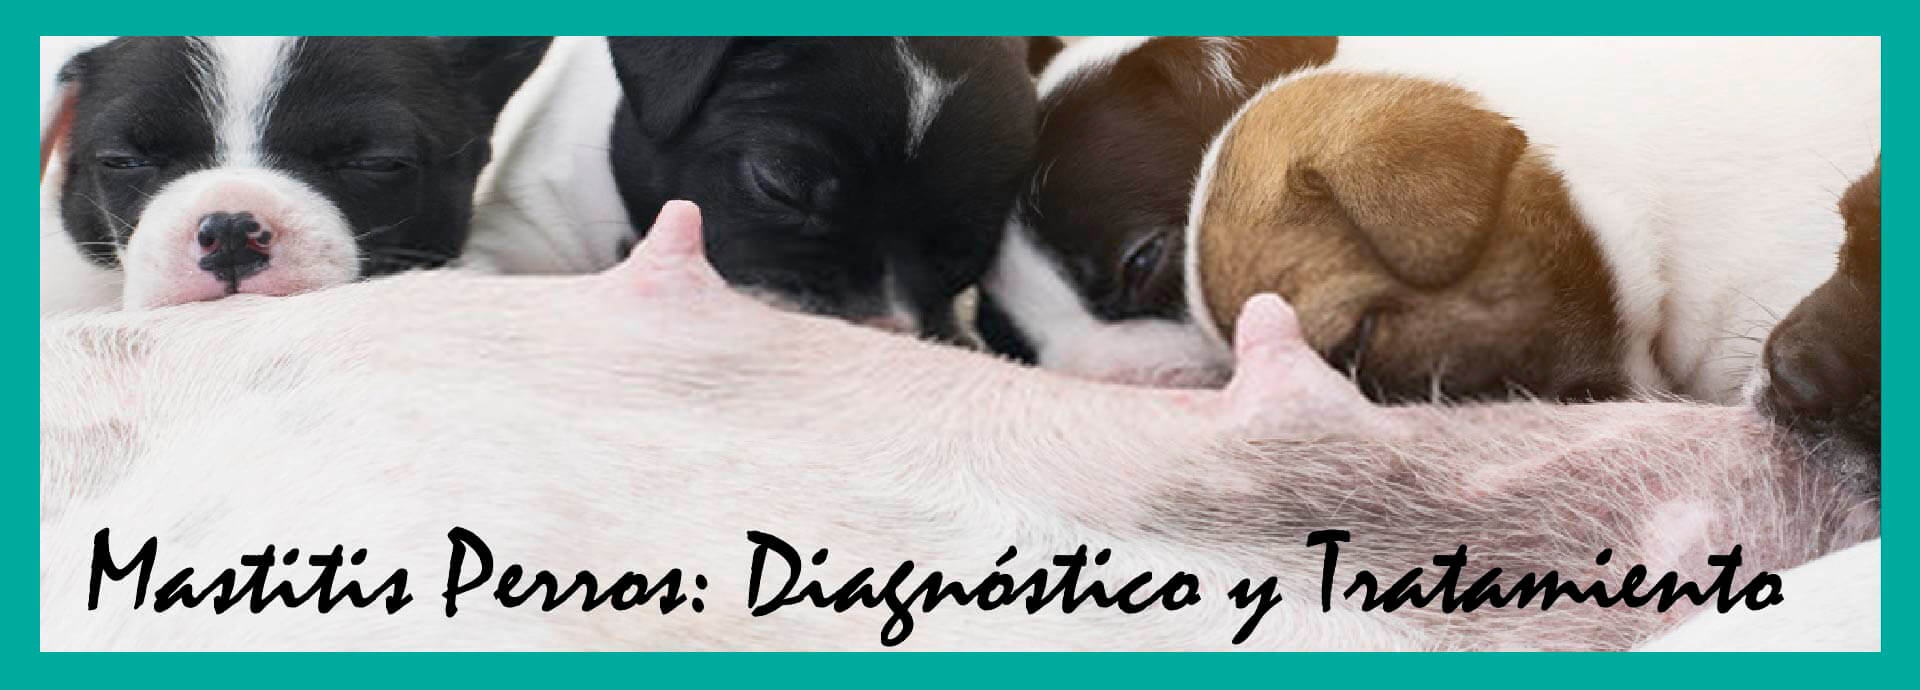 Mastitis Perros: Diagnóstico y Tratamiento